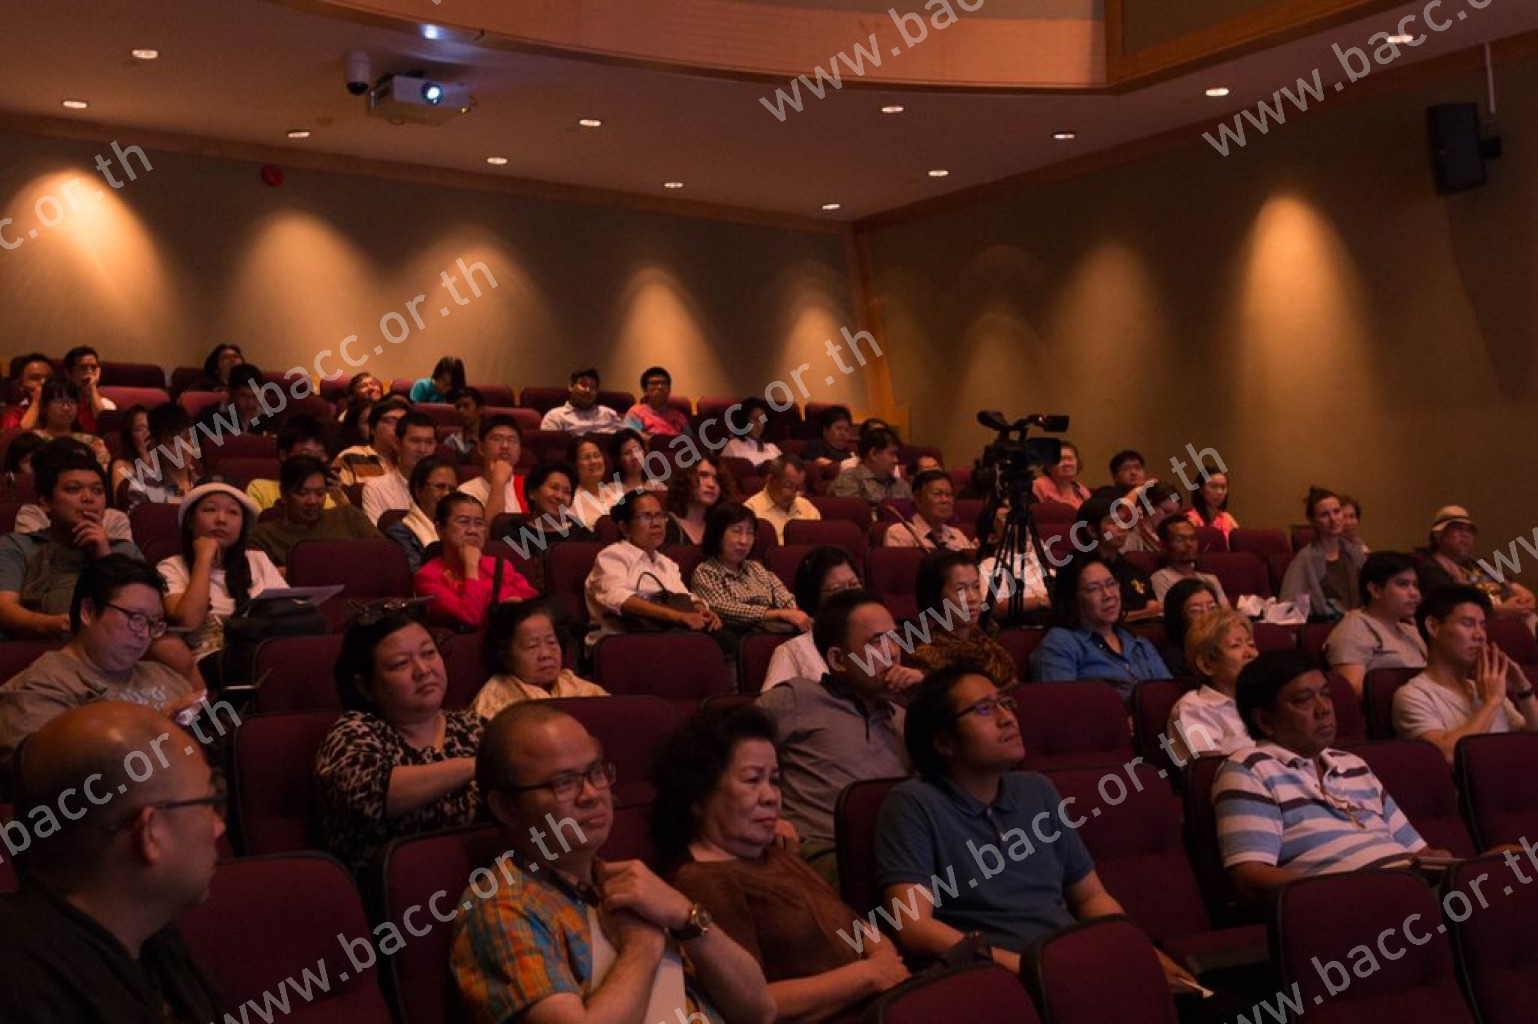 Bangkok Music Forum ครั้งที่ 11 : ชีวิตและผลงานทางดนตรีของ สันติ ลุนเผ่